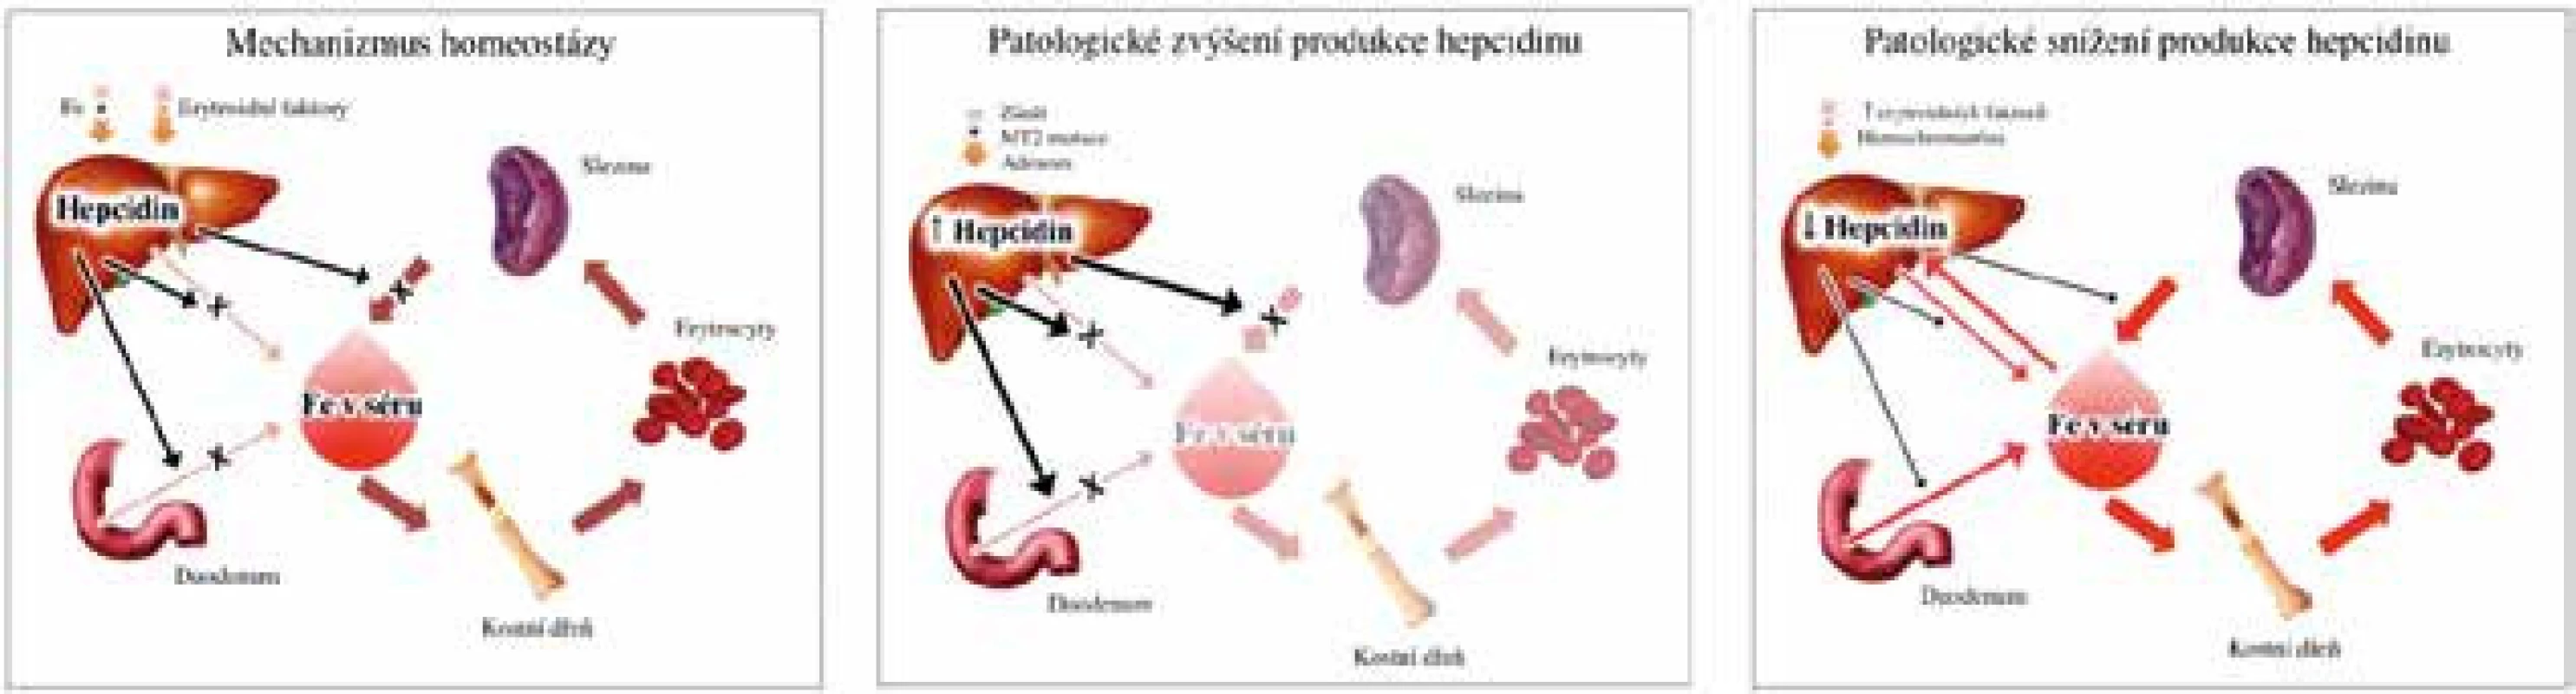 Homeostáza železa v organismu a řízení jeho cirkulace hepcidinem. Hepcidin je produkován v hepatocytech jater v odpovědi na stav železa v organismu (stimulační signál, +) a aktivitu erytropoézy (tlumící signál, -). Hepcidin (černá čára) inhibuje transport železa z enterocytů duodena, makrofágu sleziny a hepatocytů jater (x) a snižuje tak hladinu železa v plazmě. Patologické zvýšení produkce hepcidinu (v důsledku zánětu a inaktivačních mutací matriptázy 2, MT-2) vede k utlumení uvolňování železa z výše zmíněných buněčných kompartmentů a ke snížení jeho hladiny v plazmě, což vede k rozvoji anemie. Naopak při patologickém snížení produkce hepcidinu (v důsledku zvýšených hladin erytroidních faktorů nebo při mutacích genů asociovaných s hemochromatózou) dochází ke zvýšení hladiny železa v plazmě a eventuálnímu rozvoji přetížení organismu železem. (Upraveno dle: Ganz, 2011 [20])